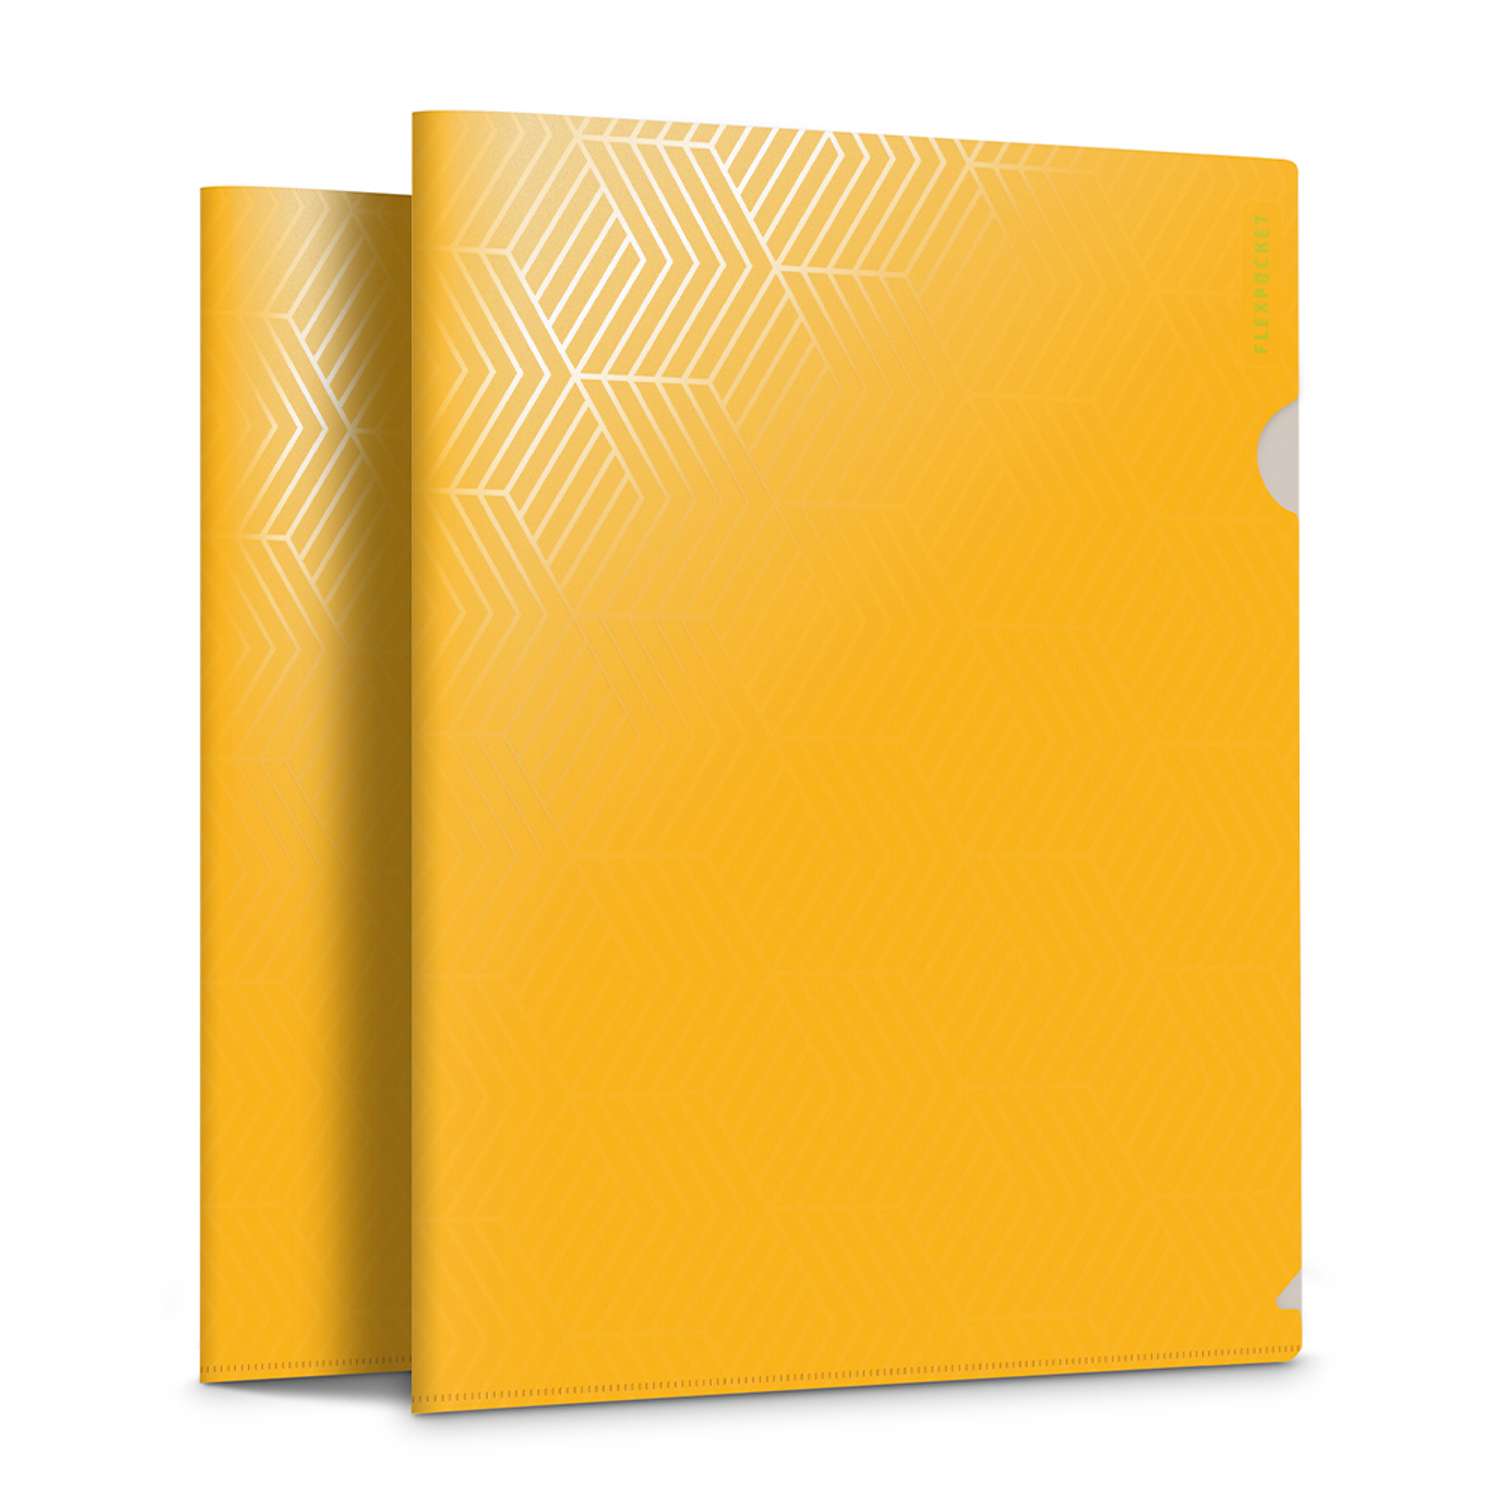 Папка-уголок для документов Flexpocket канцелярская желтого цвета в комплекте 2 шт - фото 1